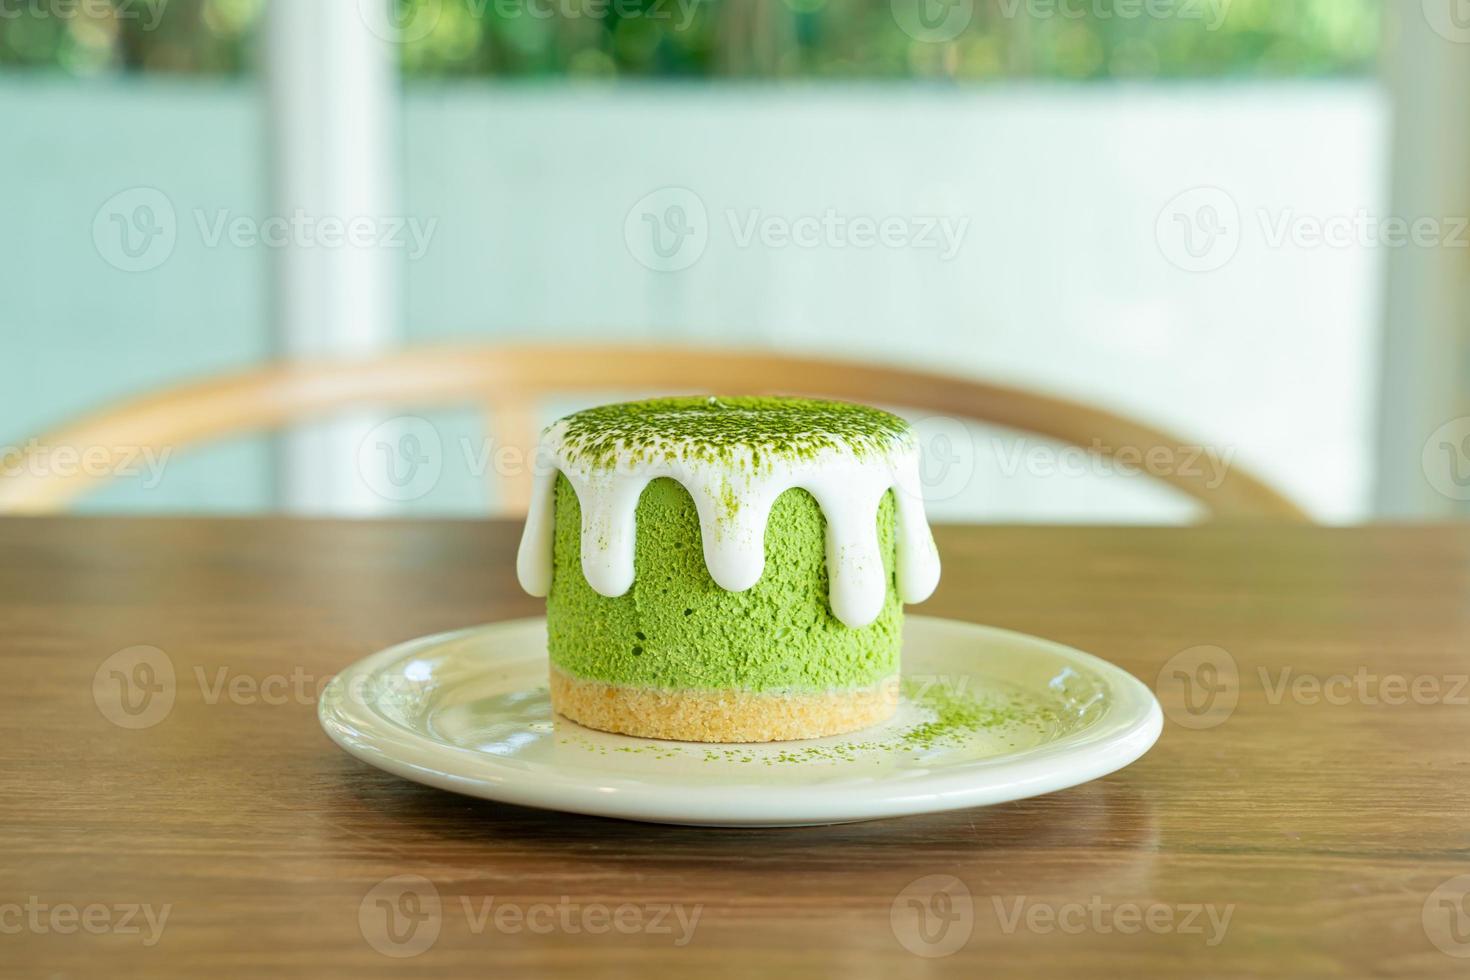 bolo de queijo matcha chá verde foto